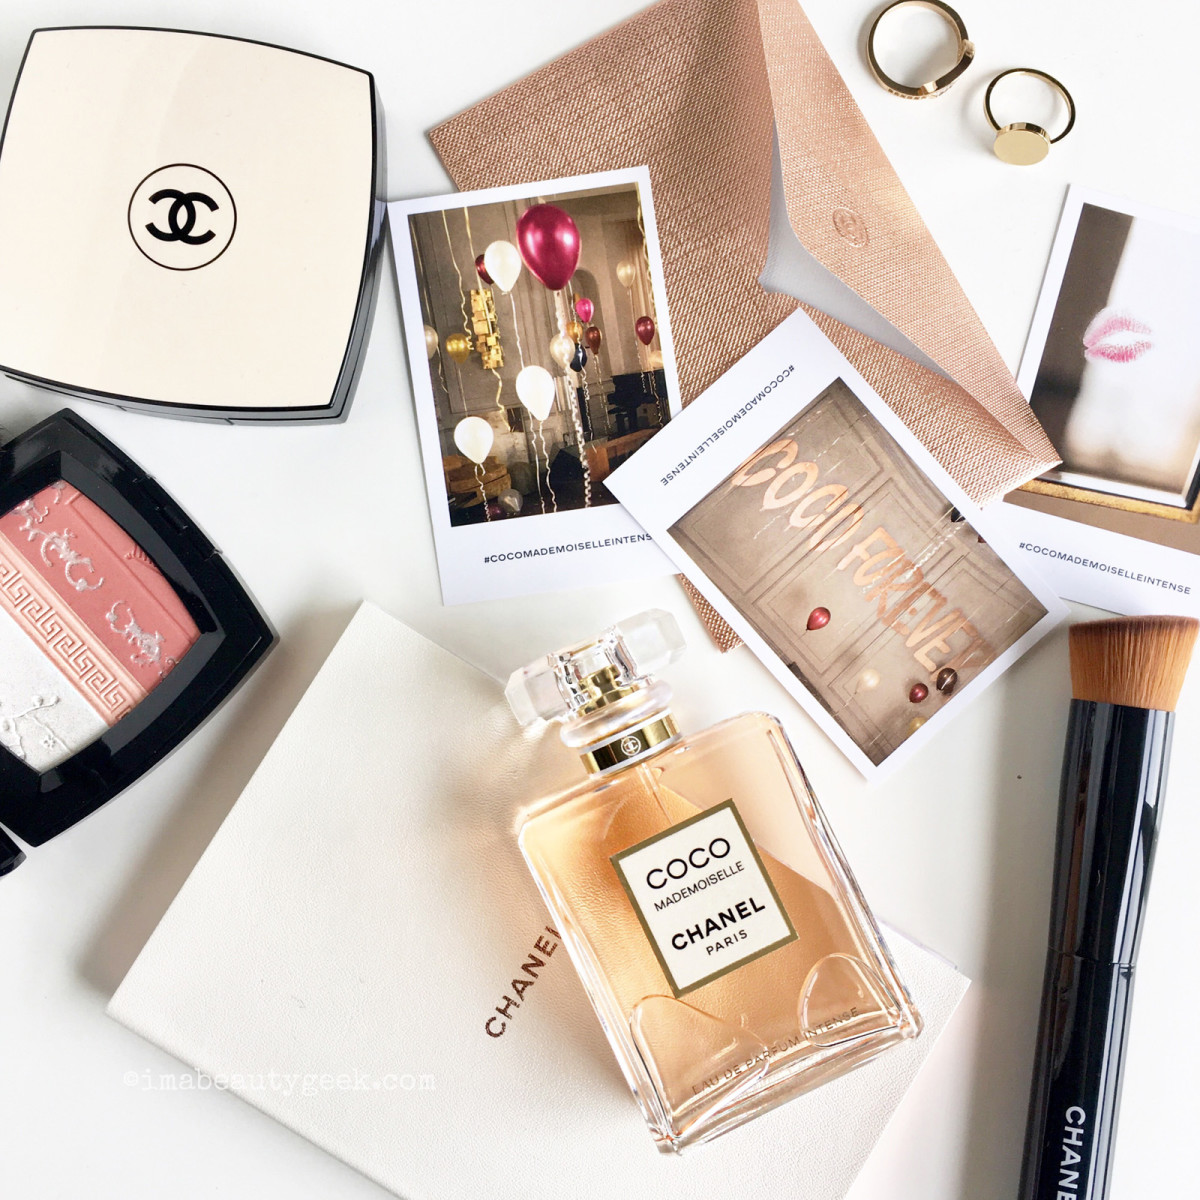 Chanel Coco Mademoiselle Eau de Parfum Intense, 50 mL, $129 CAD/$110 USD